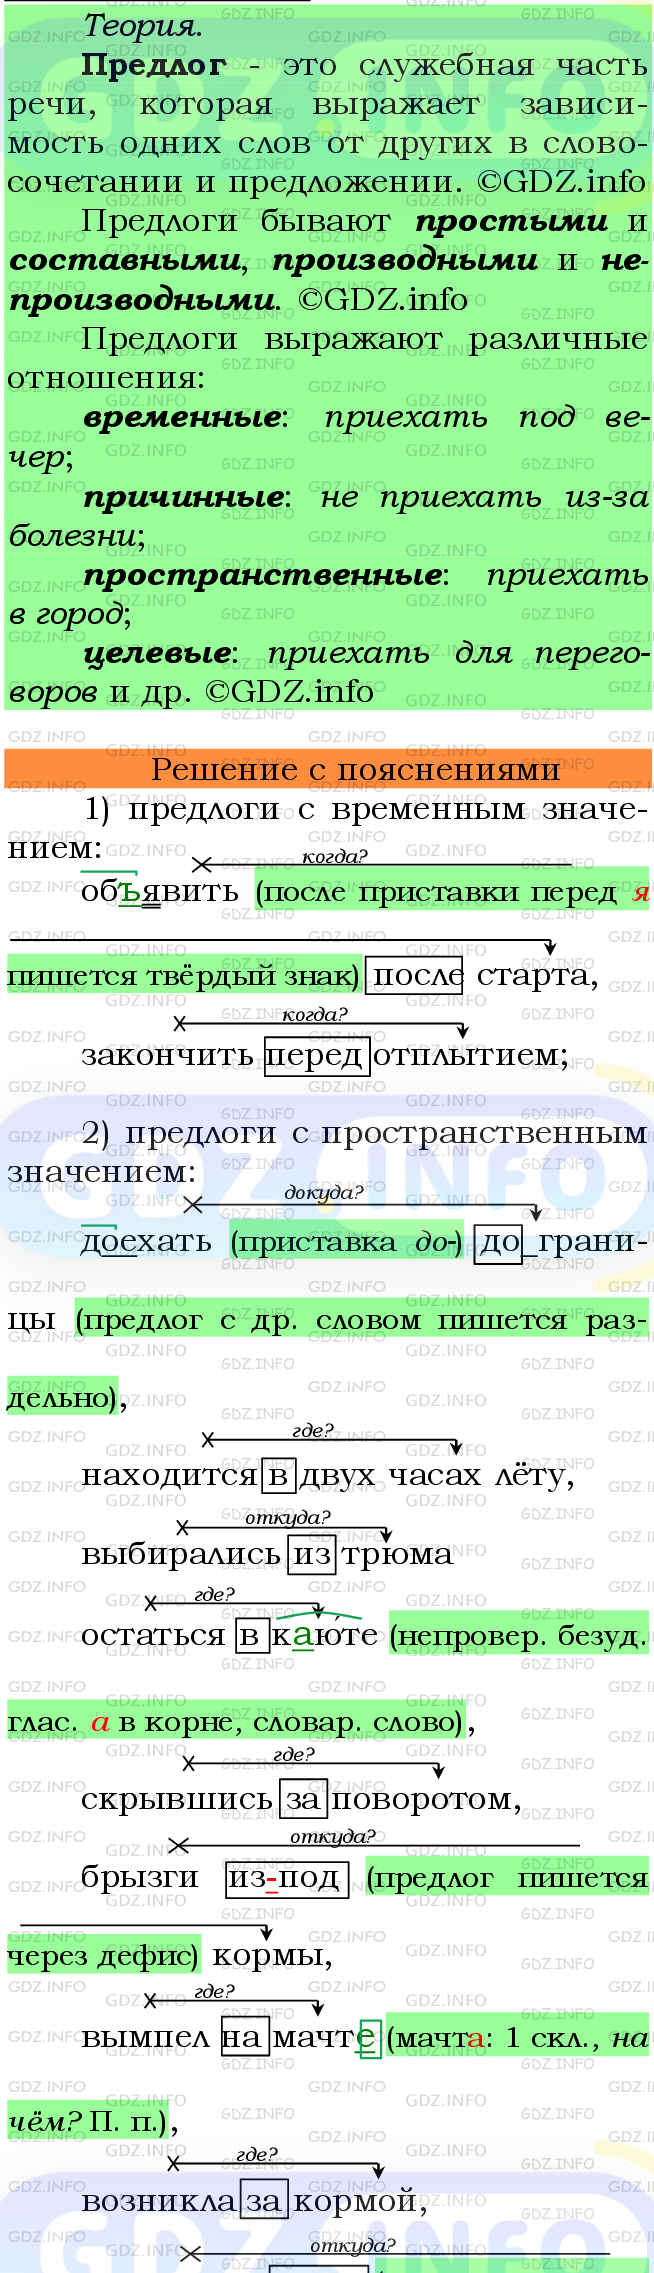 Фото подробного решения: Номер №409 из ГДЗ по Русскому языку 7 класс: Ладыженская Т.А.